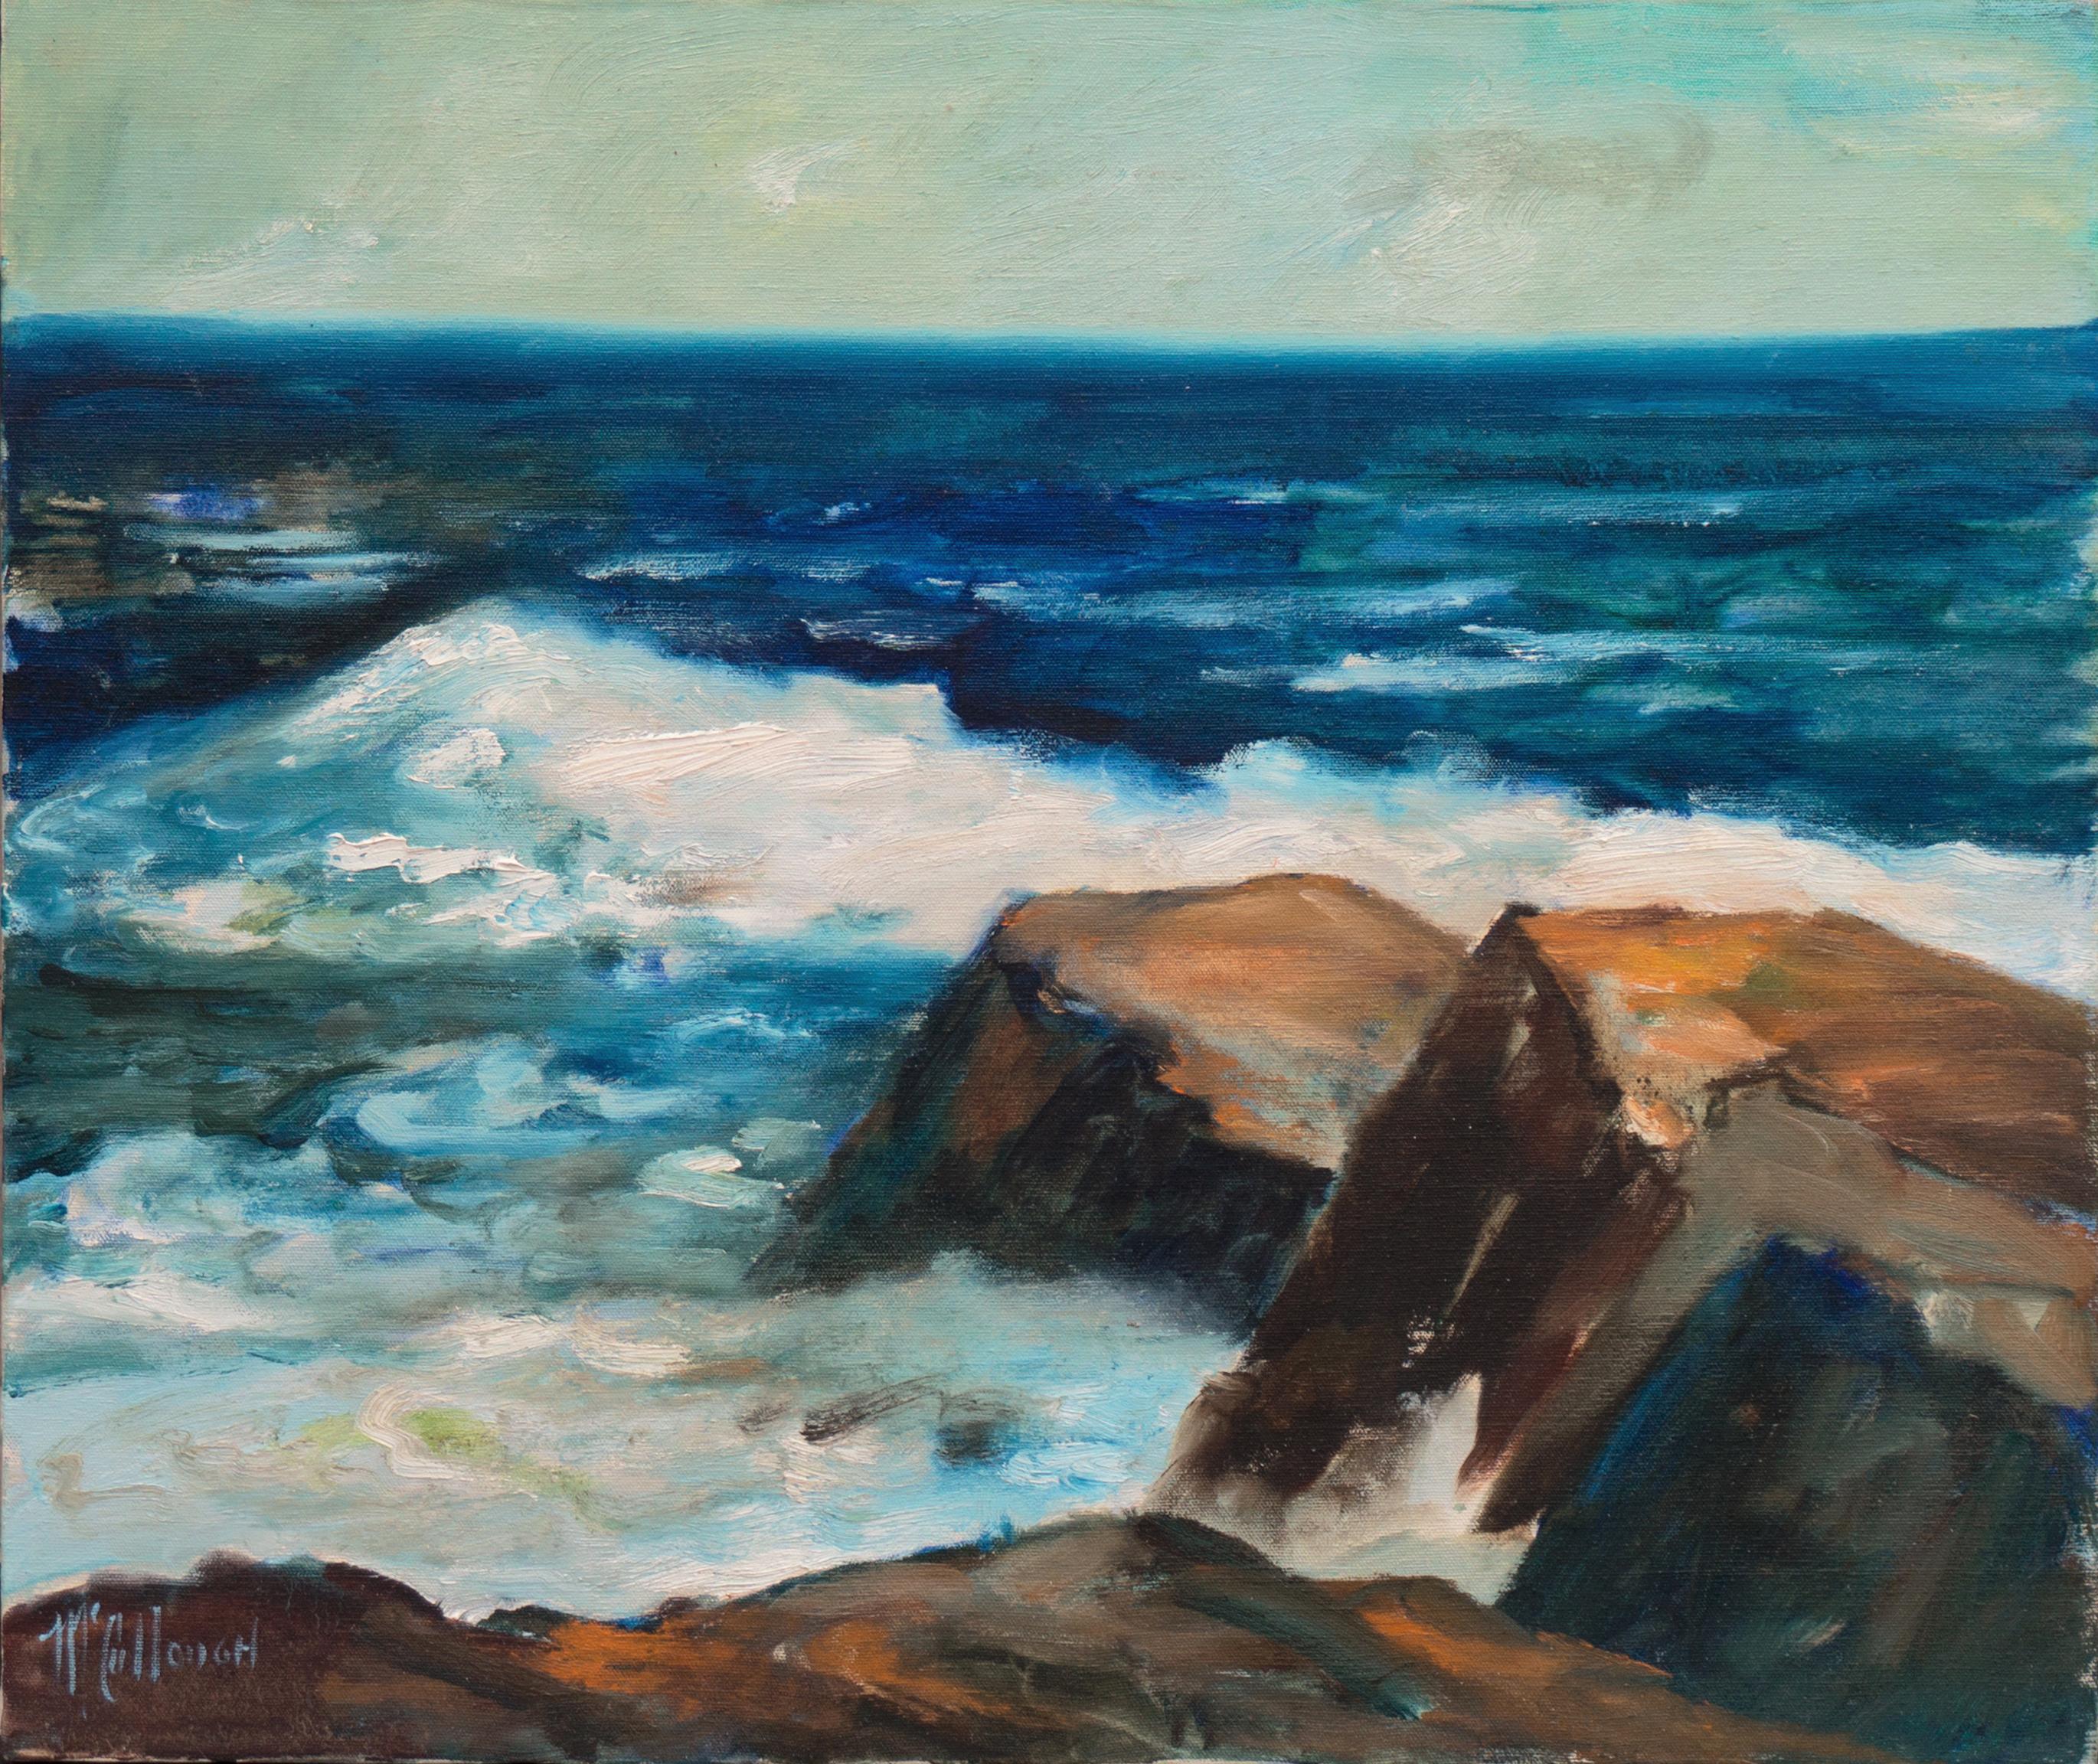 Jane McCullough Landscape Painting - 'Pacific Surf', California Plein Air Woman Artist, Santa Cruz, Carmel